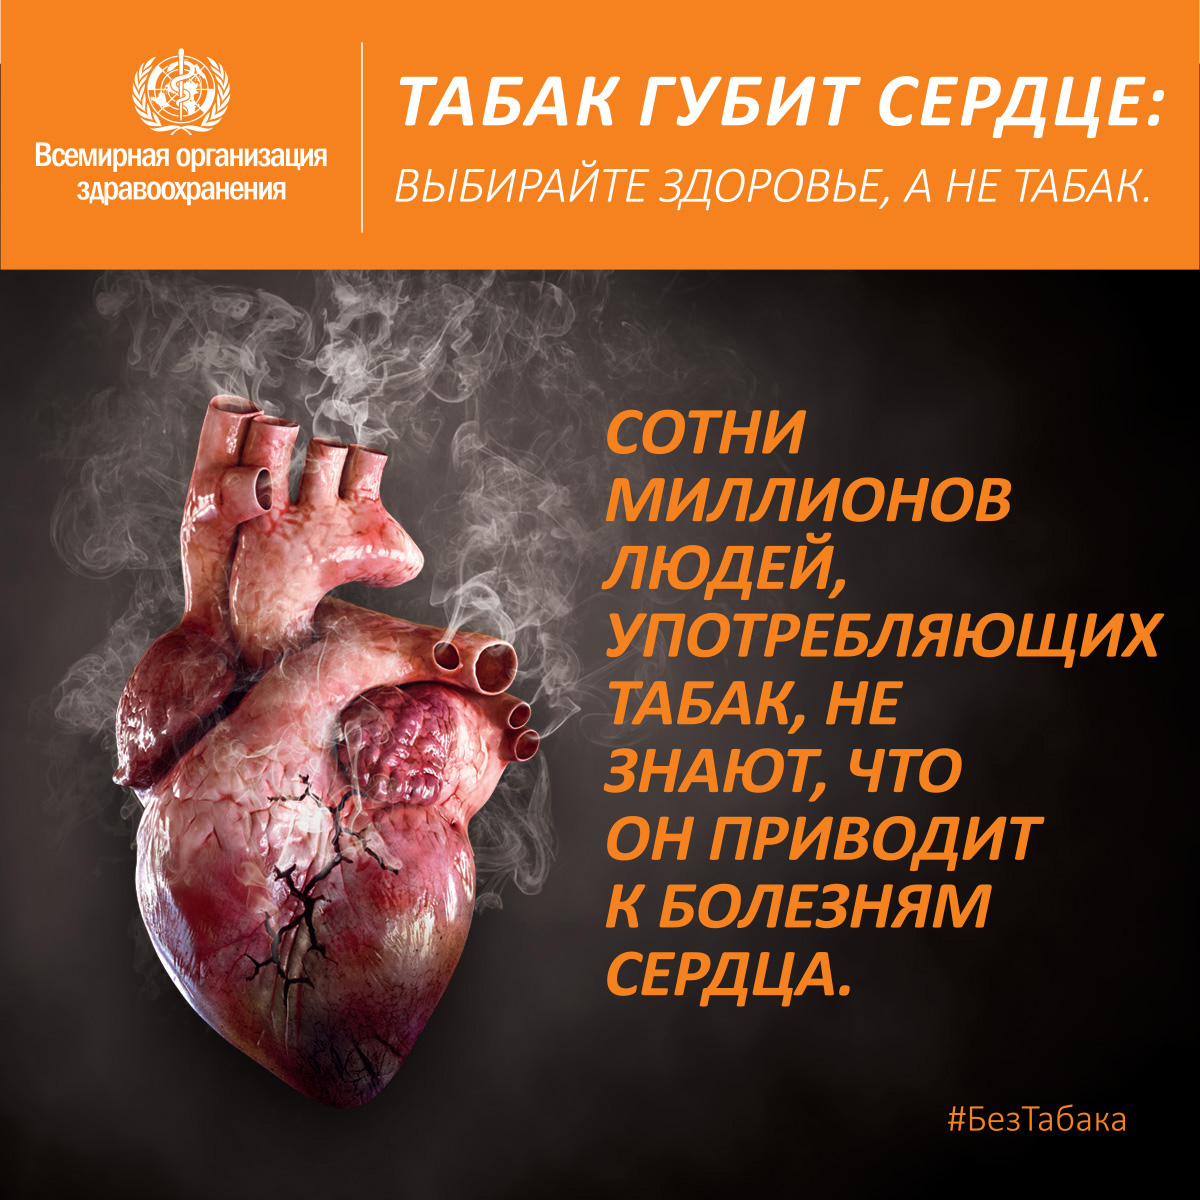 Табак и сердце. 
 Весь мир 12 августа отмечает международный день молодежи. Это одна из интереснейших дат, так как в ее основе лежит самое прекрасное: молодость. Молодо